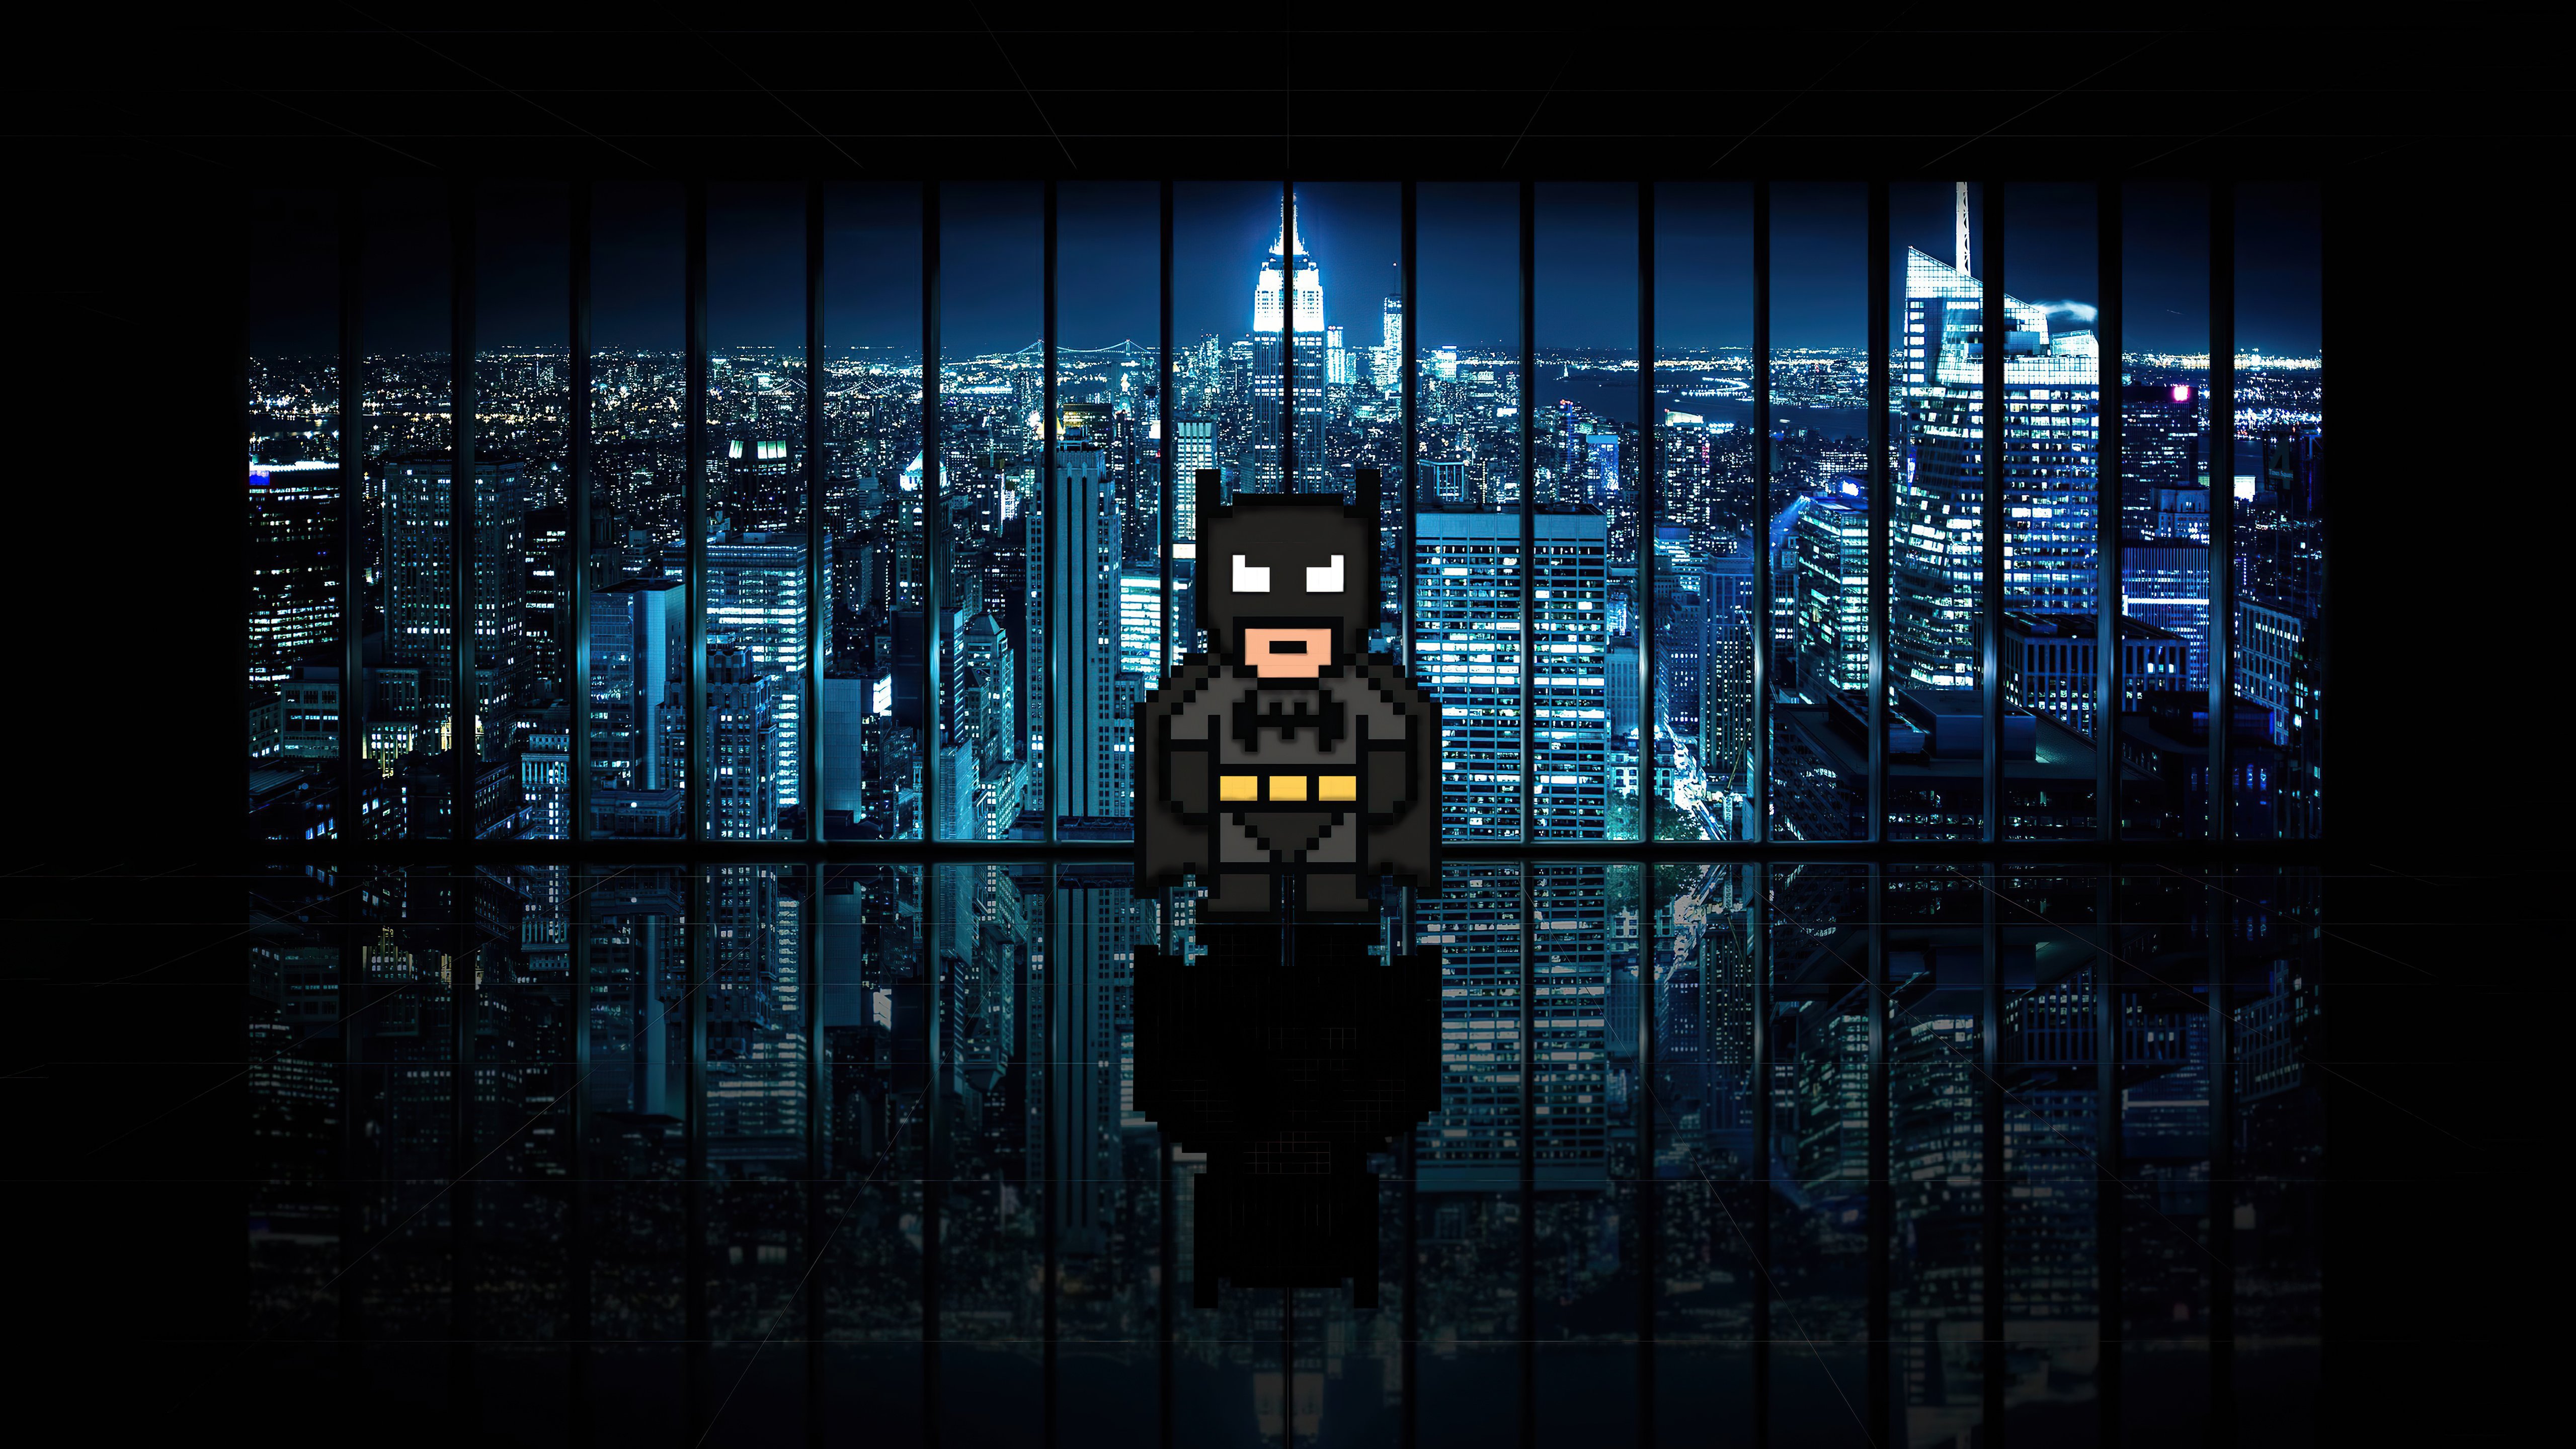 Fondos de pantalla Batman 8 Bits